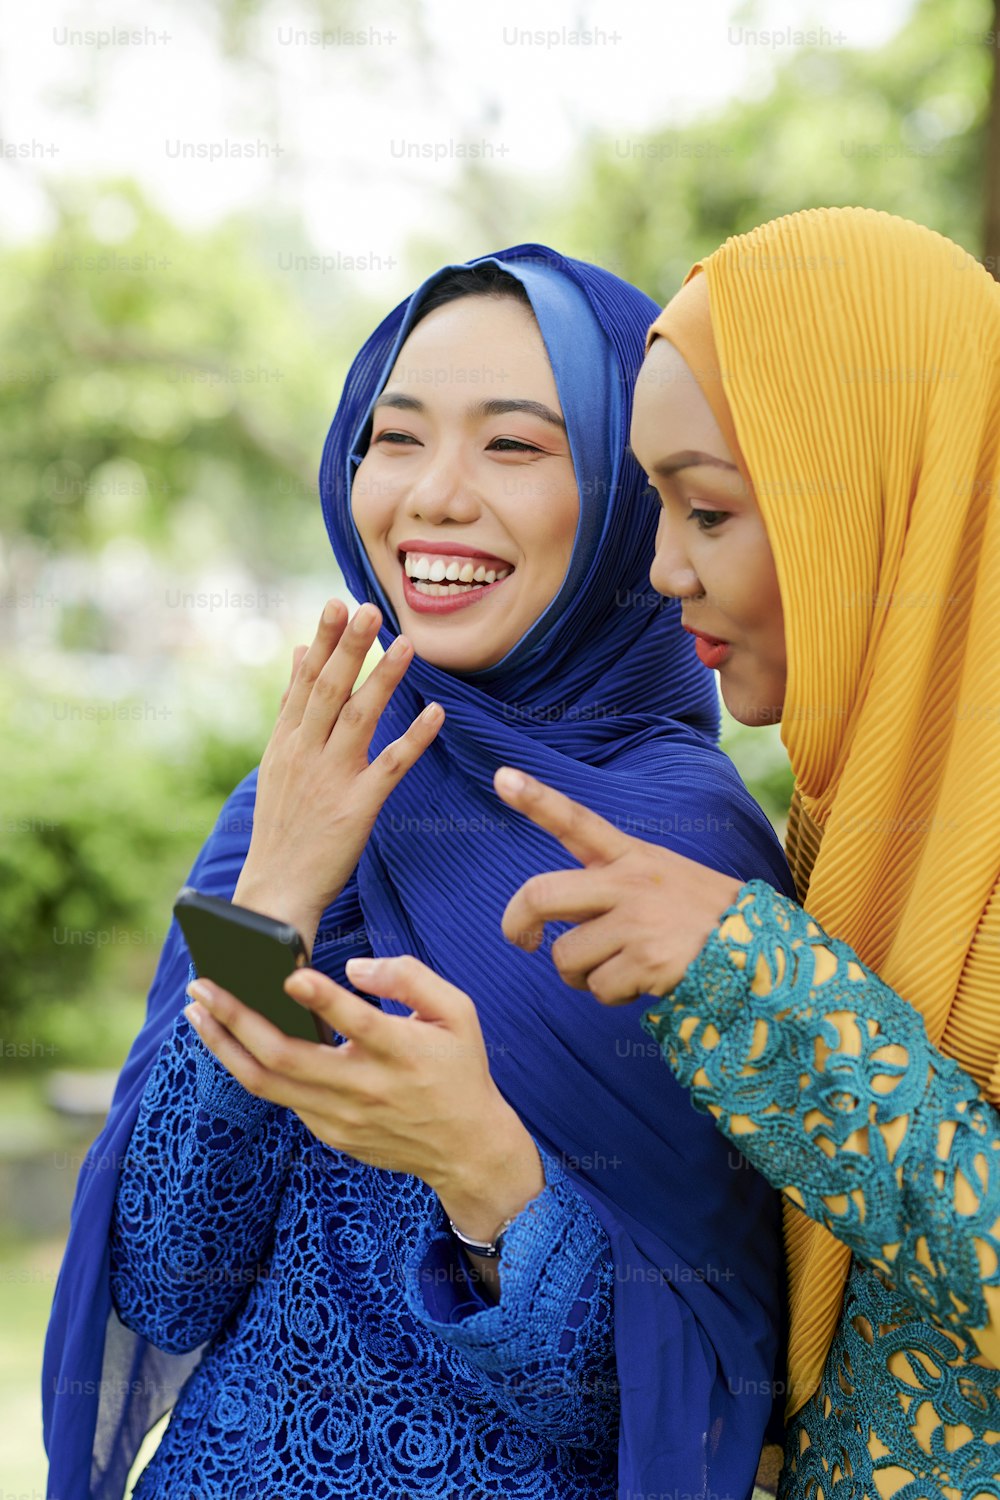 スマートフォンの画面で友人からのテキストメッセージを読みながら笑う2人の美しいイスラム教徒の女性